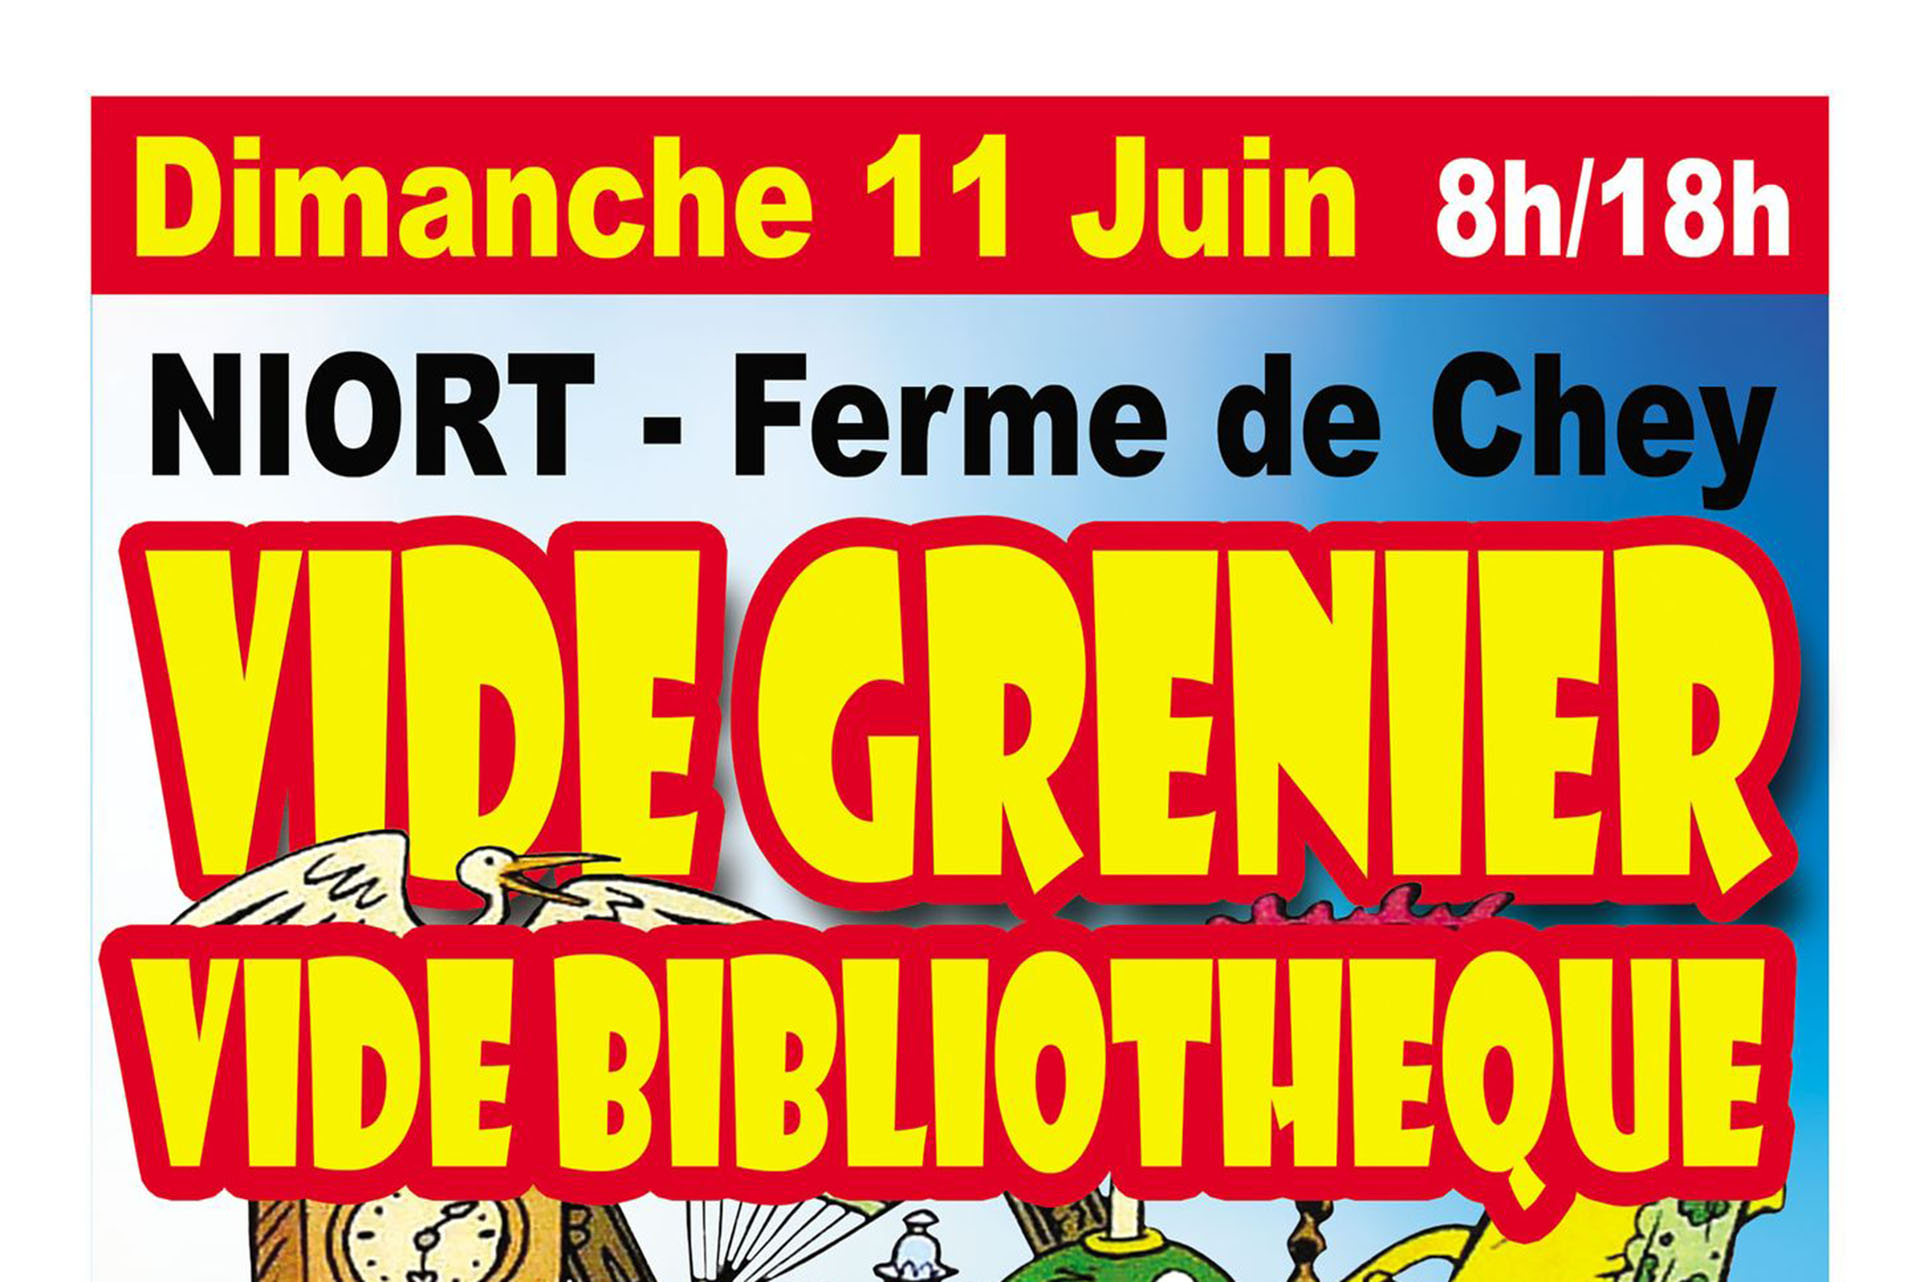 Vide Grenier et Vide Bibliothèque